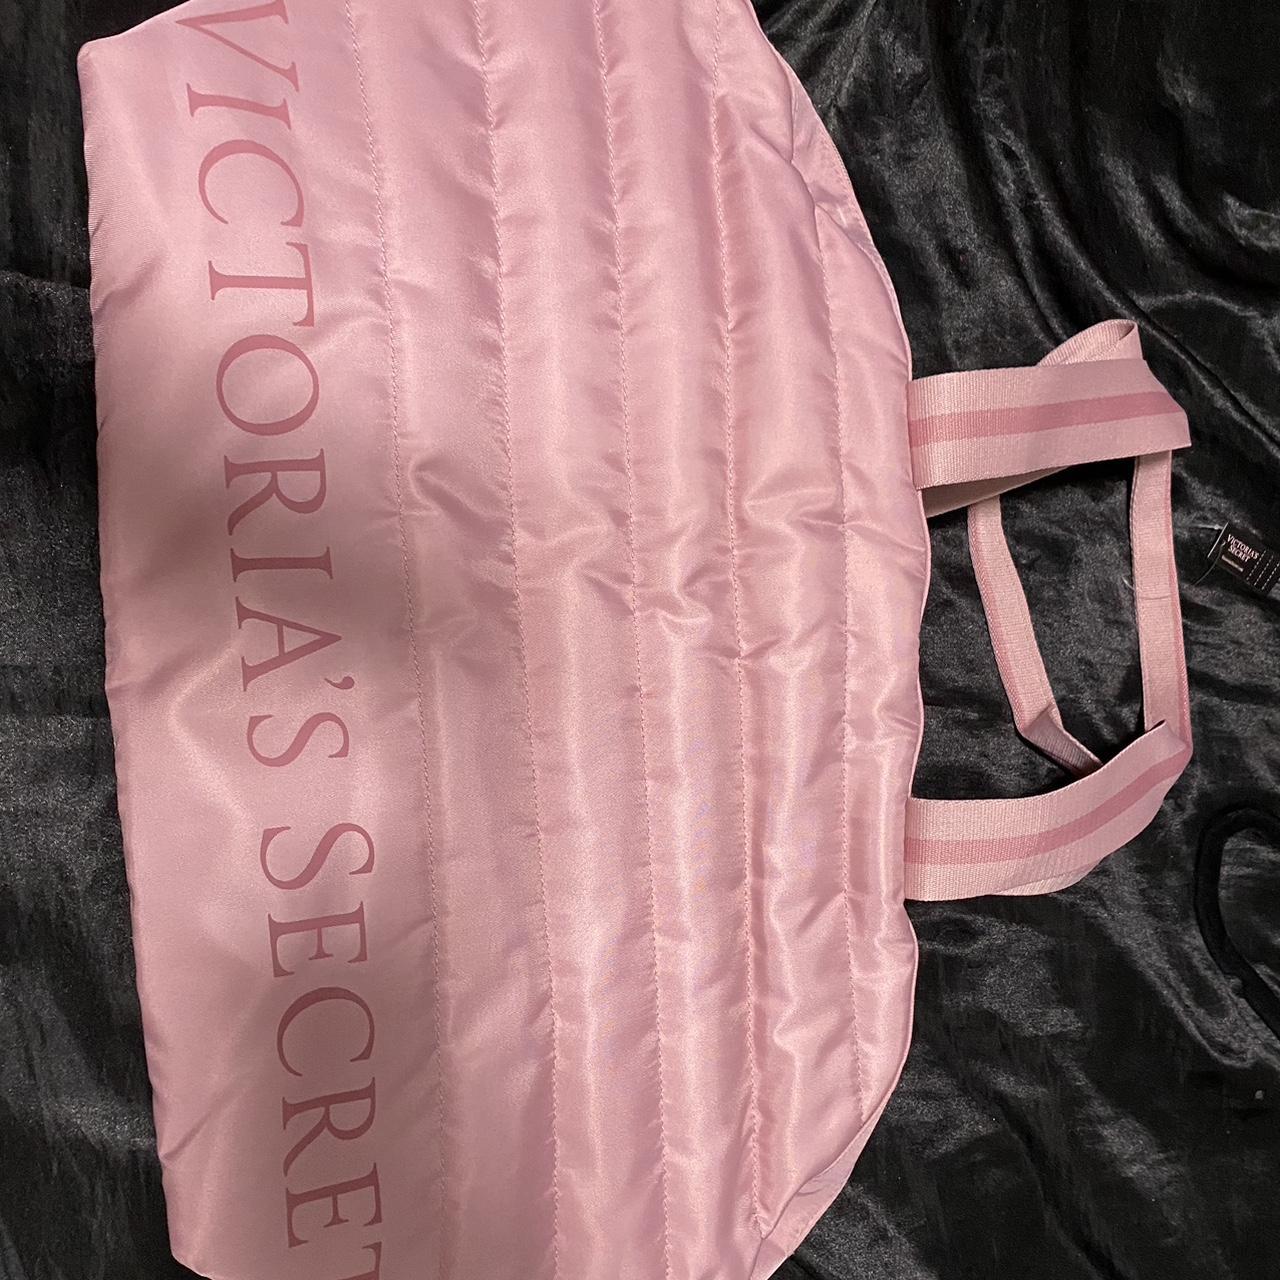 victoria's secret Victoria Secret bag